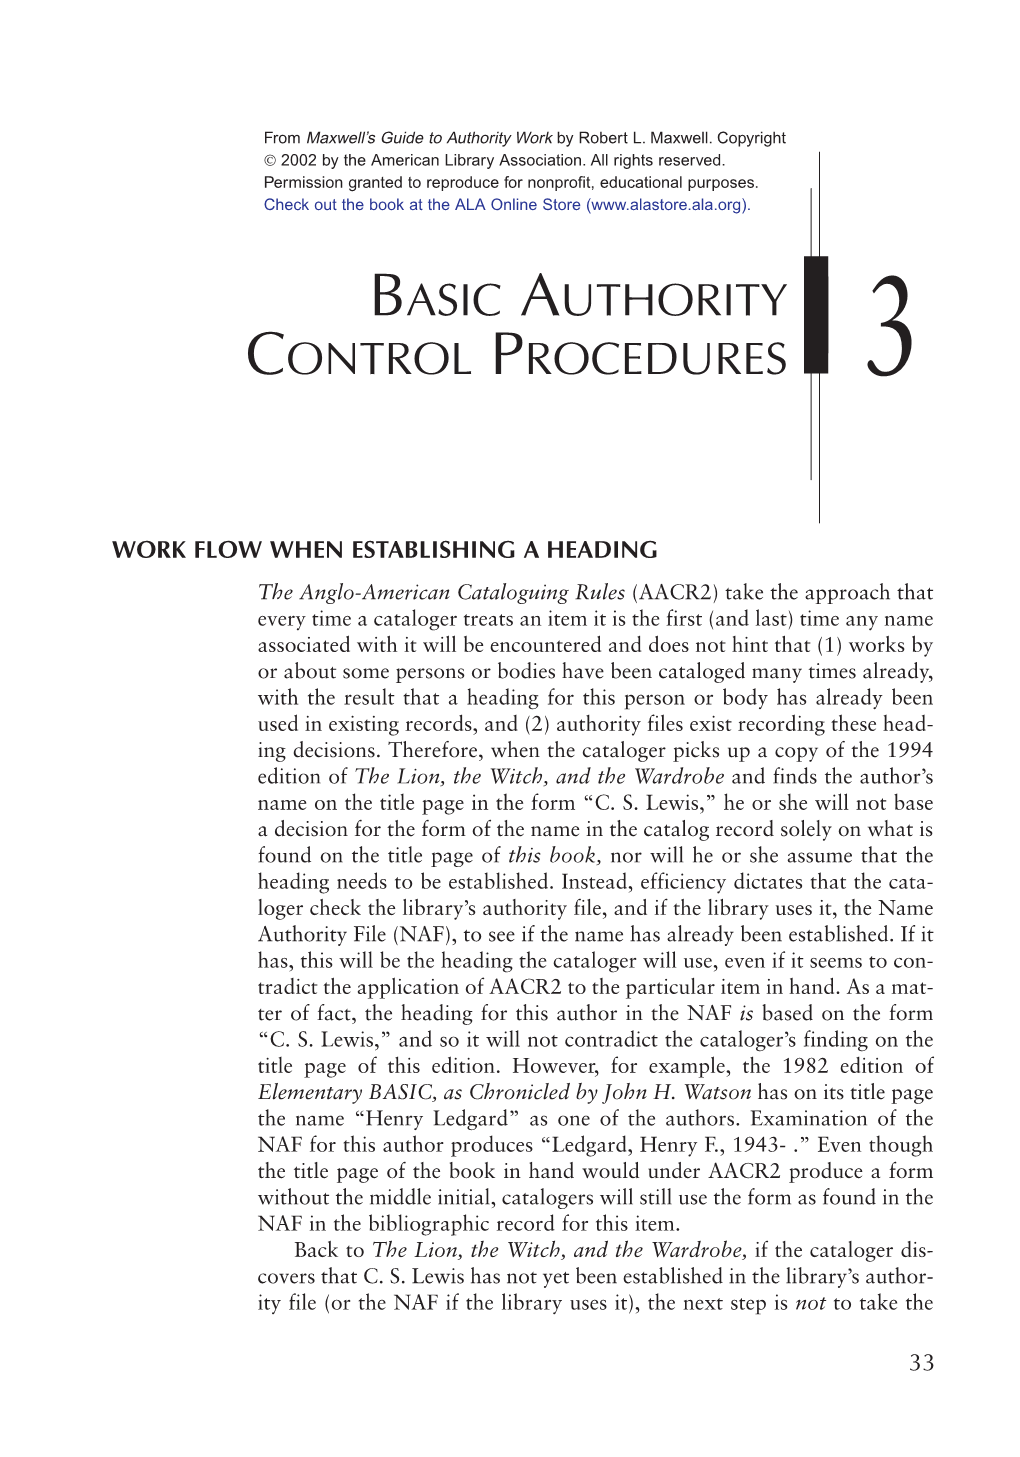 Basic Authority Control Procedures 3